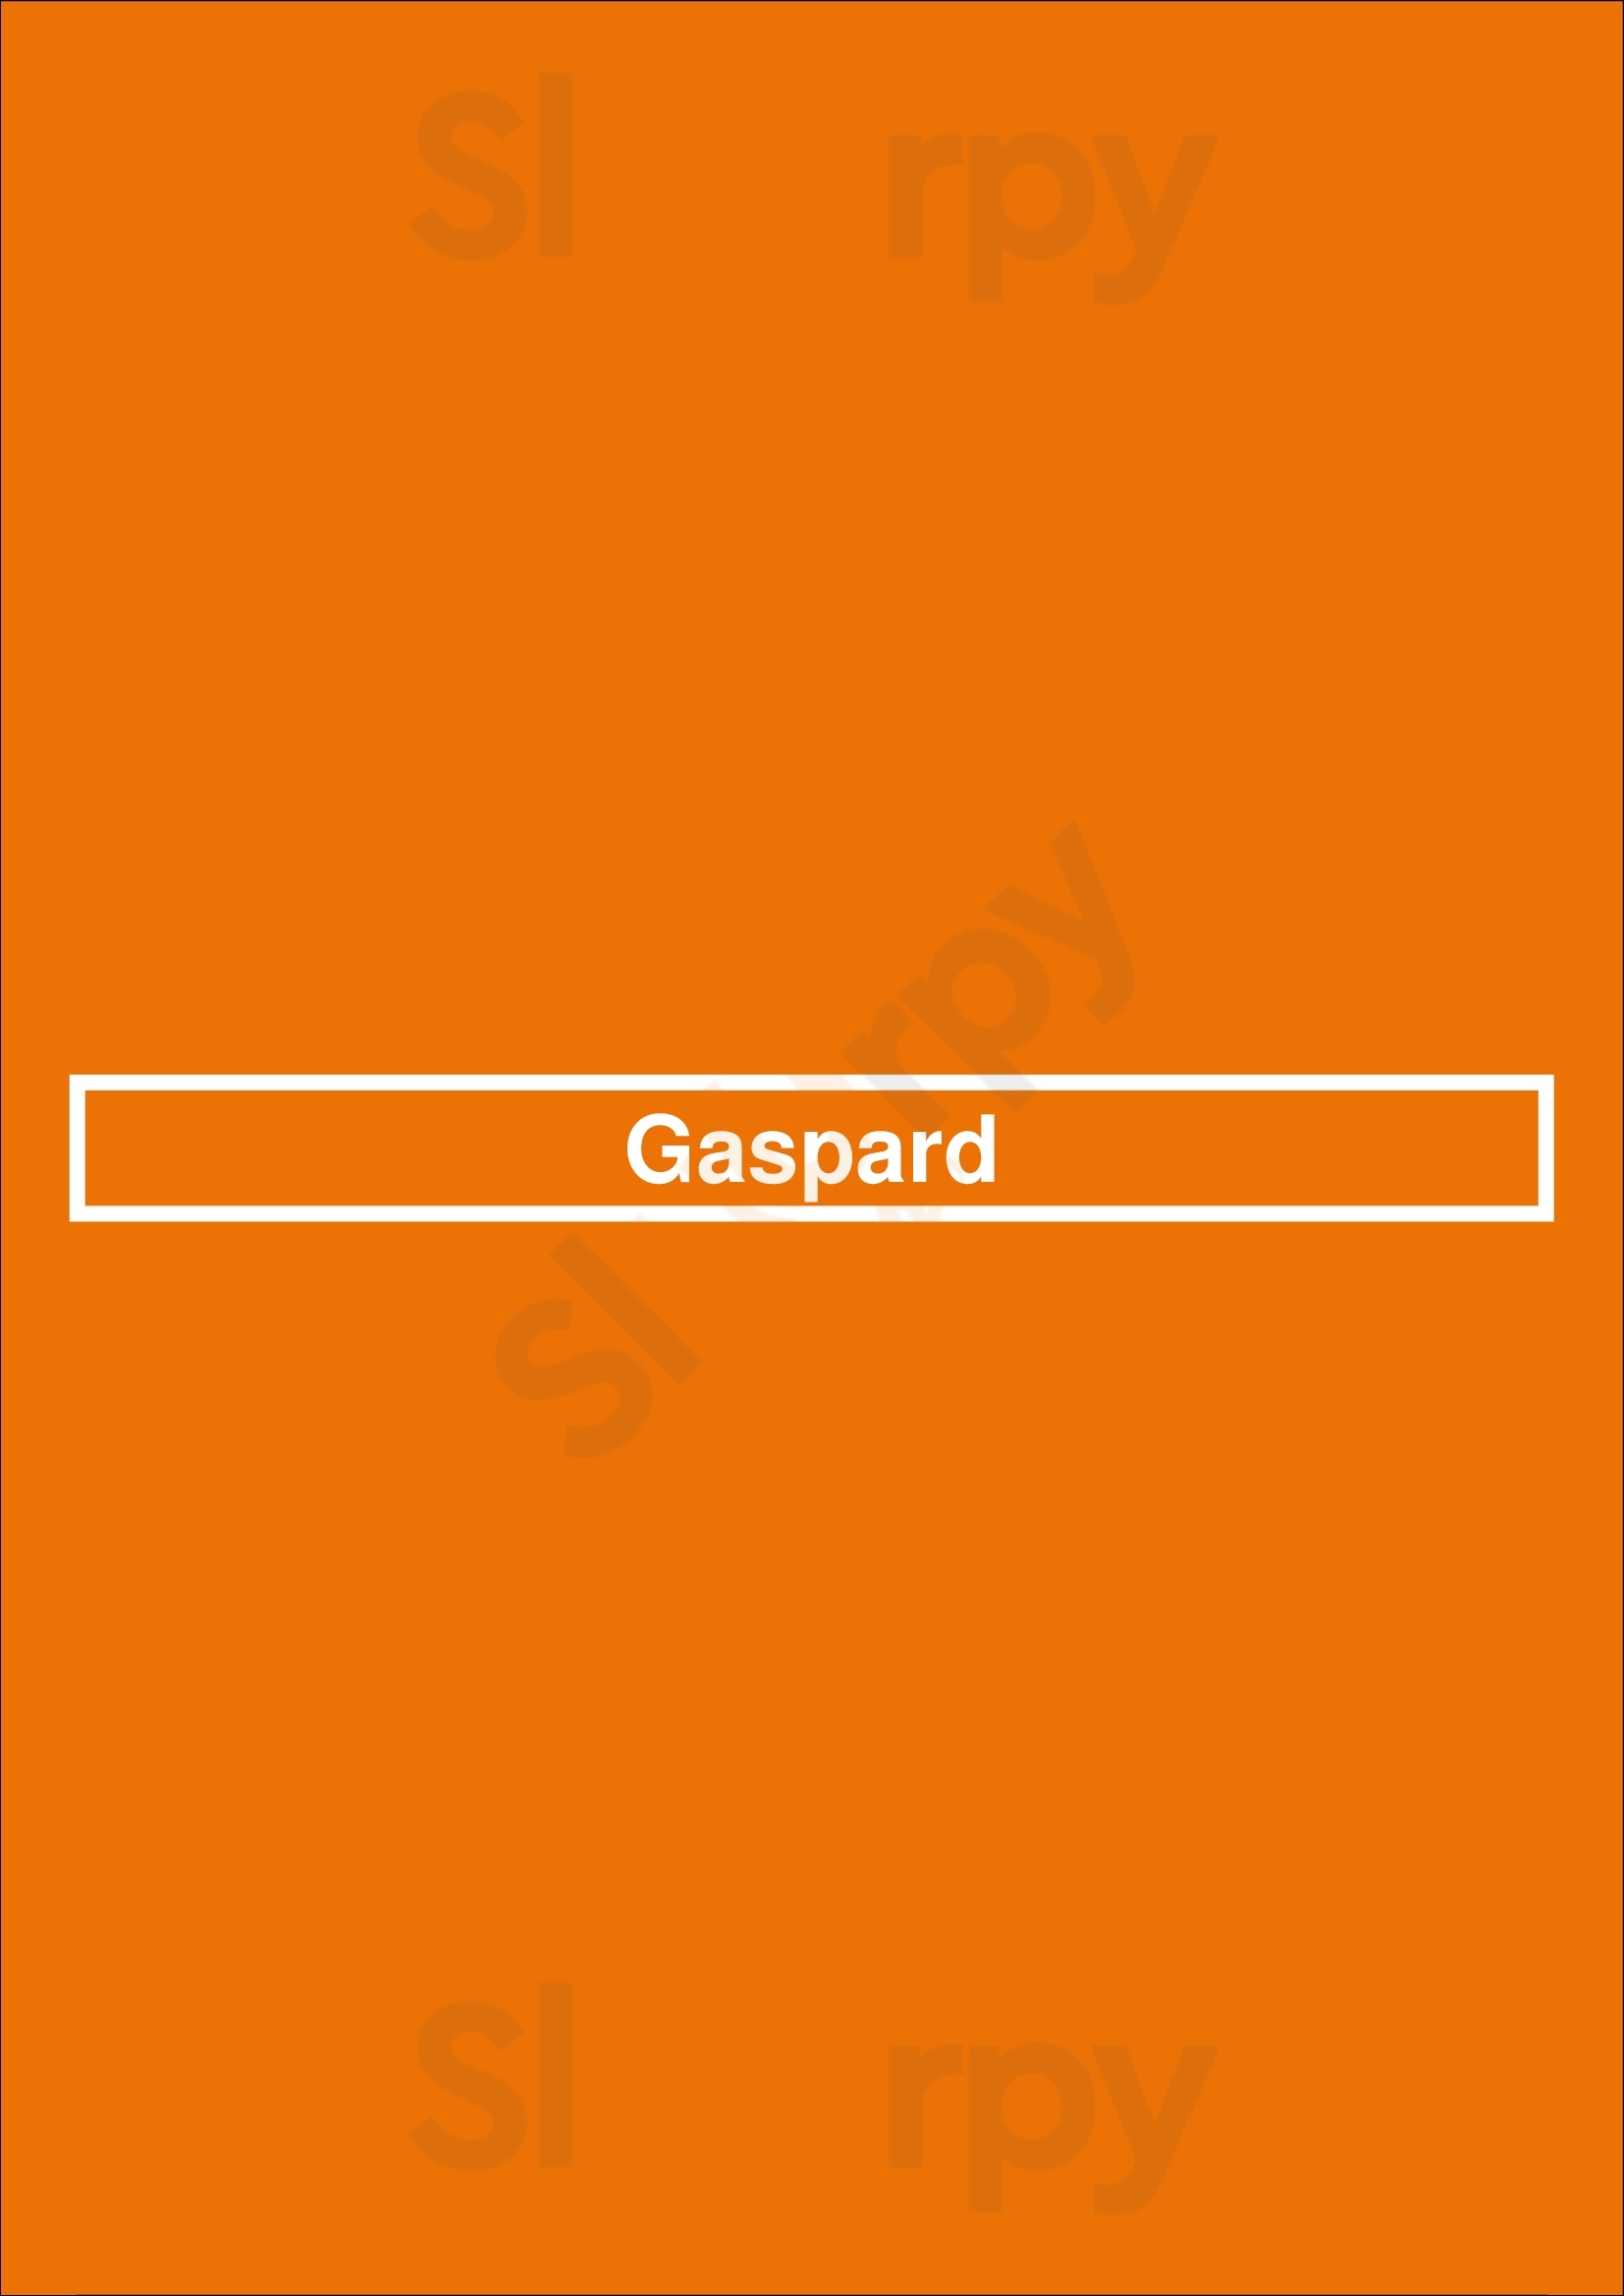 Gaspard Paris Menu - 1